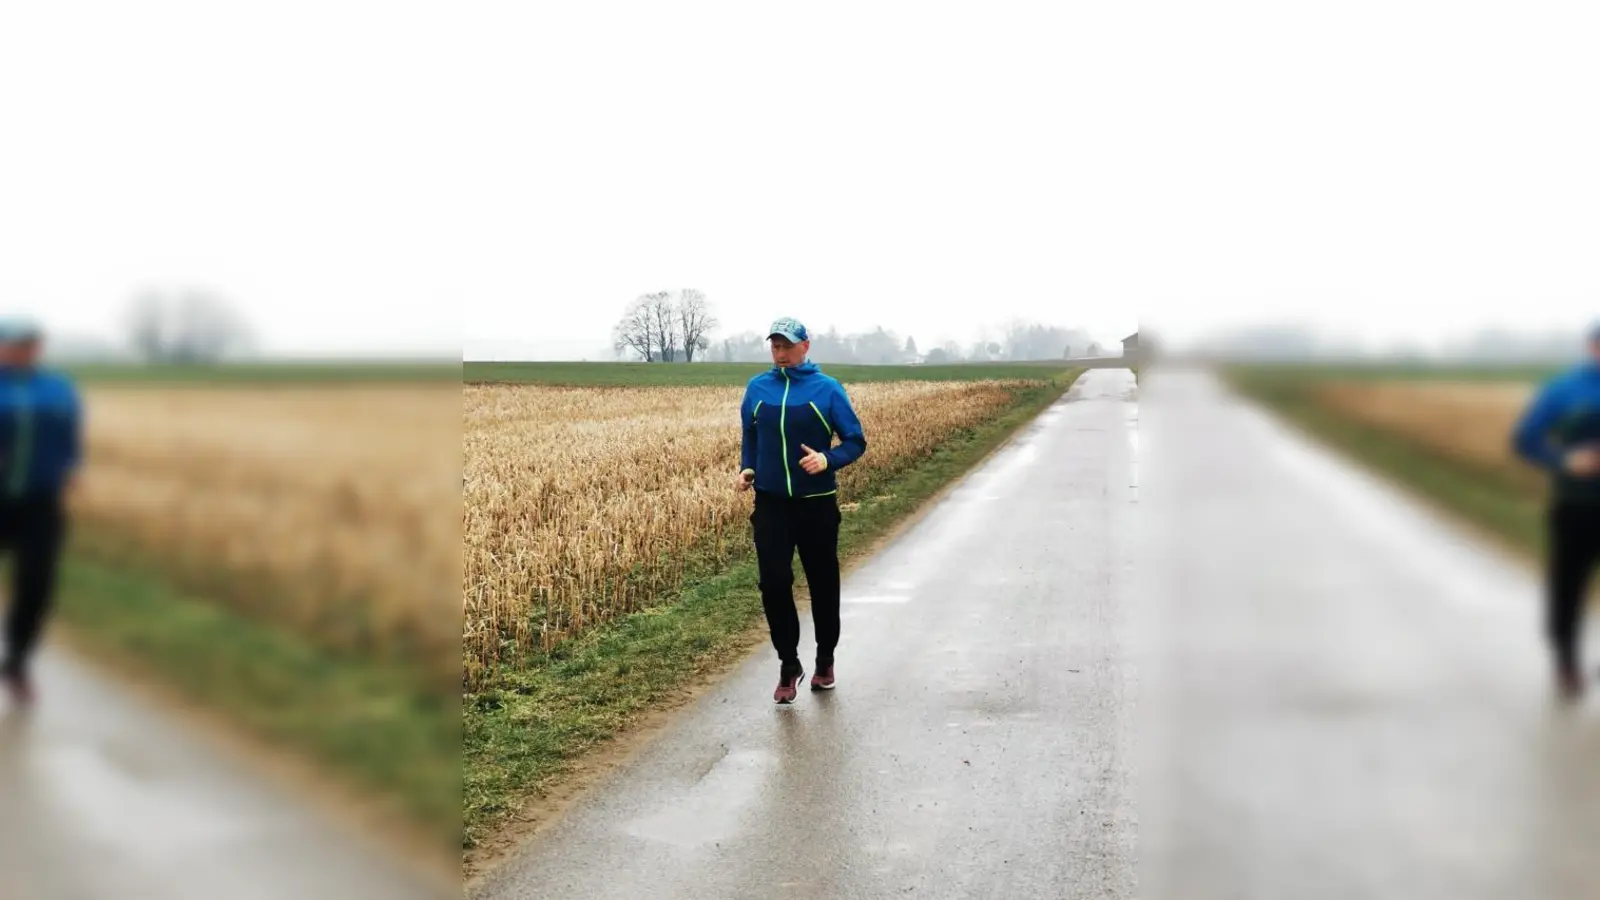 Regen, Nebel, Wind oder Schnee   - kein Wetter hält Viktor Reger auf, seinem großen Ziel 50 Kilometer am Tag näher zu kommen. 	Foto: privat (Foto: privat)